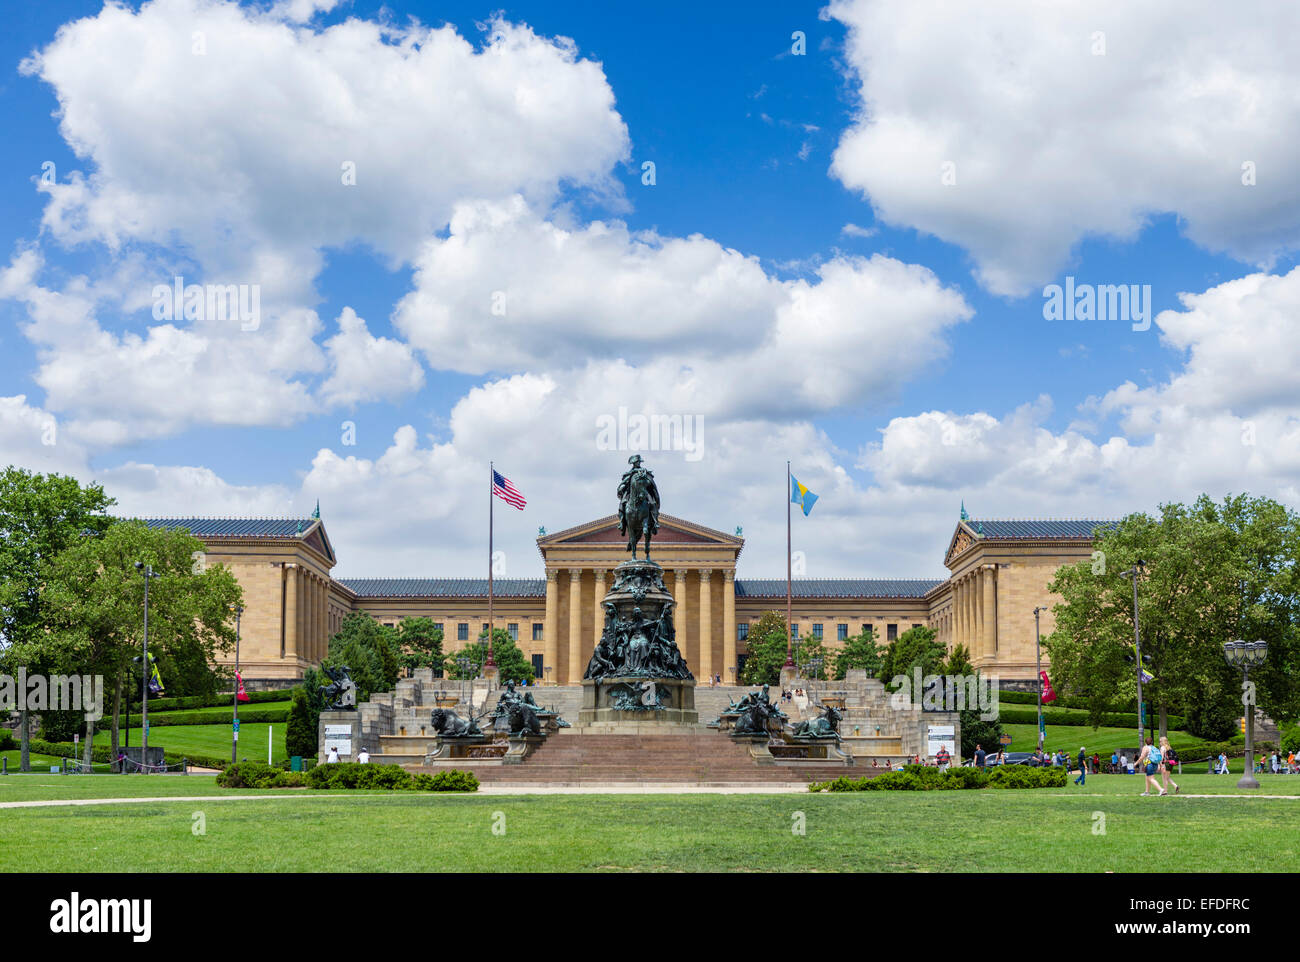 Le monument de George Washington sur ovale Eakins en face de Philadelphia Museum of Art, Fairmount Park, Philadelphie, Pennsylvanie, USA Banque D'Images